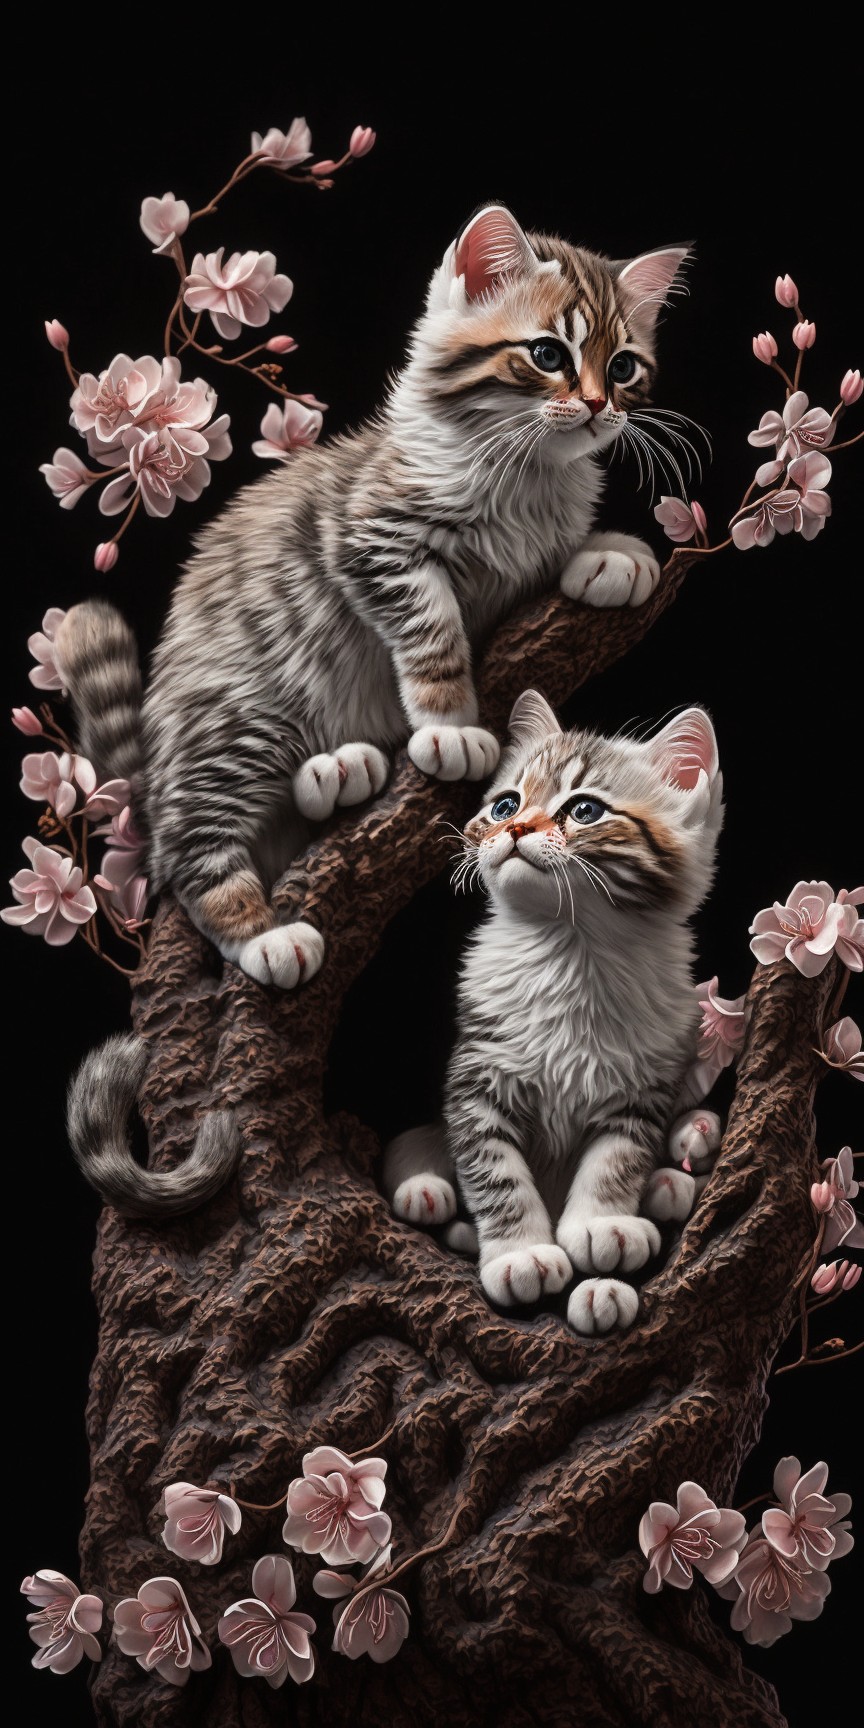 樱花树上的两只小猫